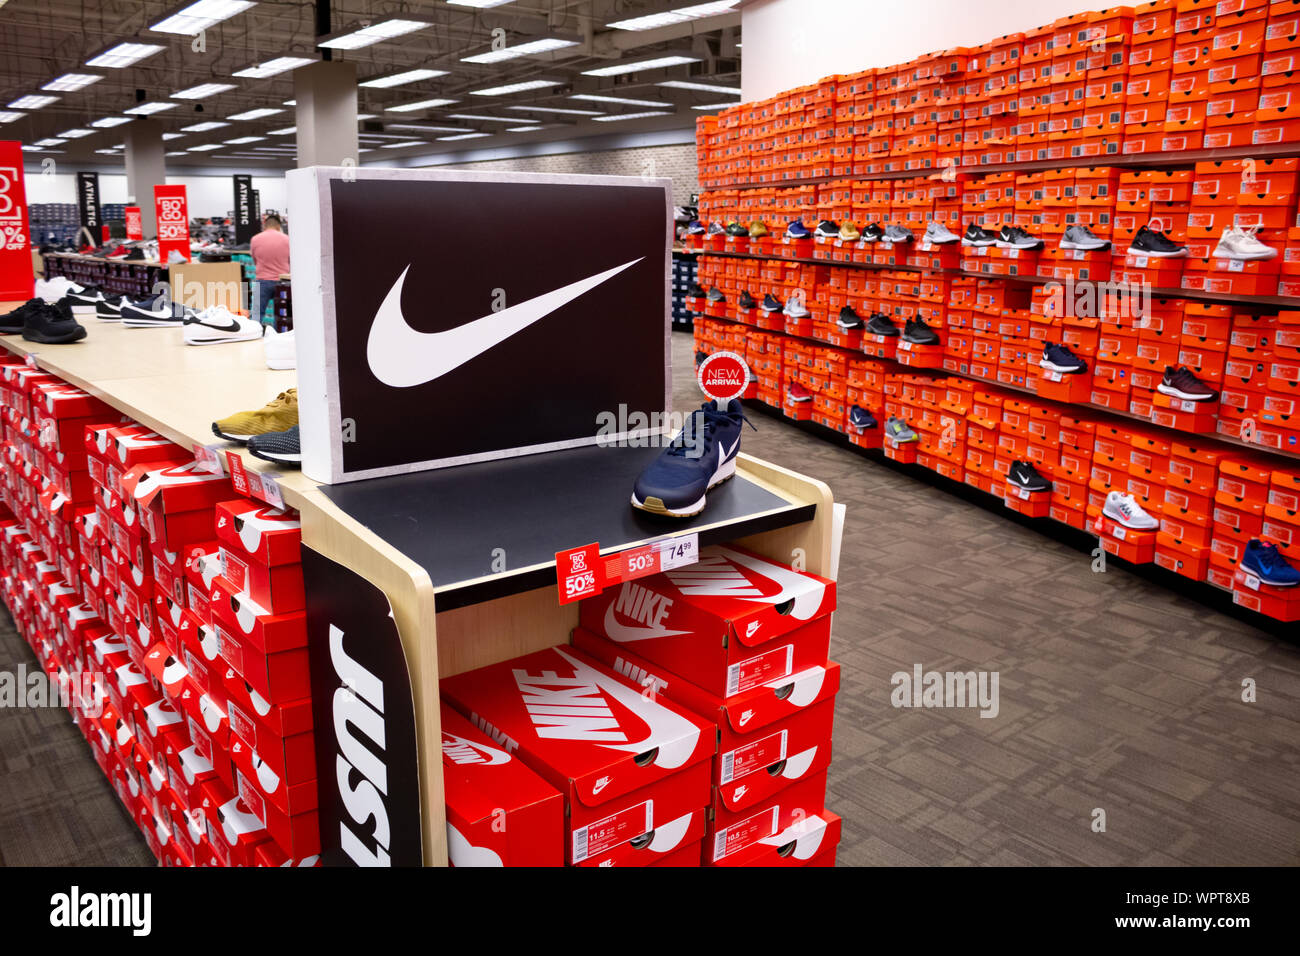 Los Angeles, Californie, États-Unis - 02-22-2019: Une vue de la section Nike Shoe vu dans un magasin de détail local. Banque D'Images